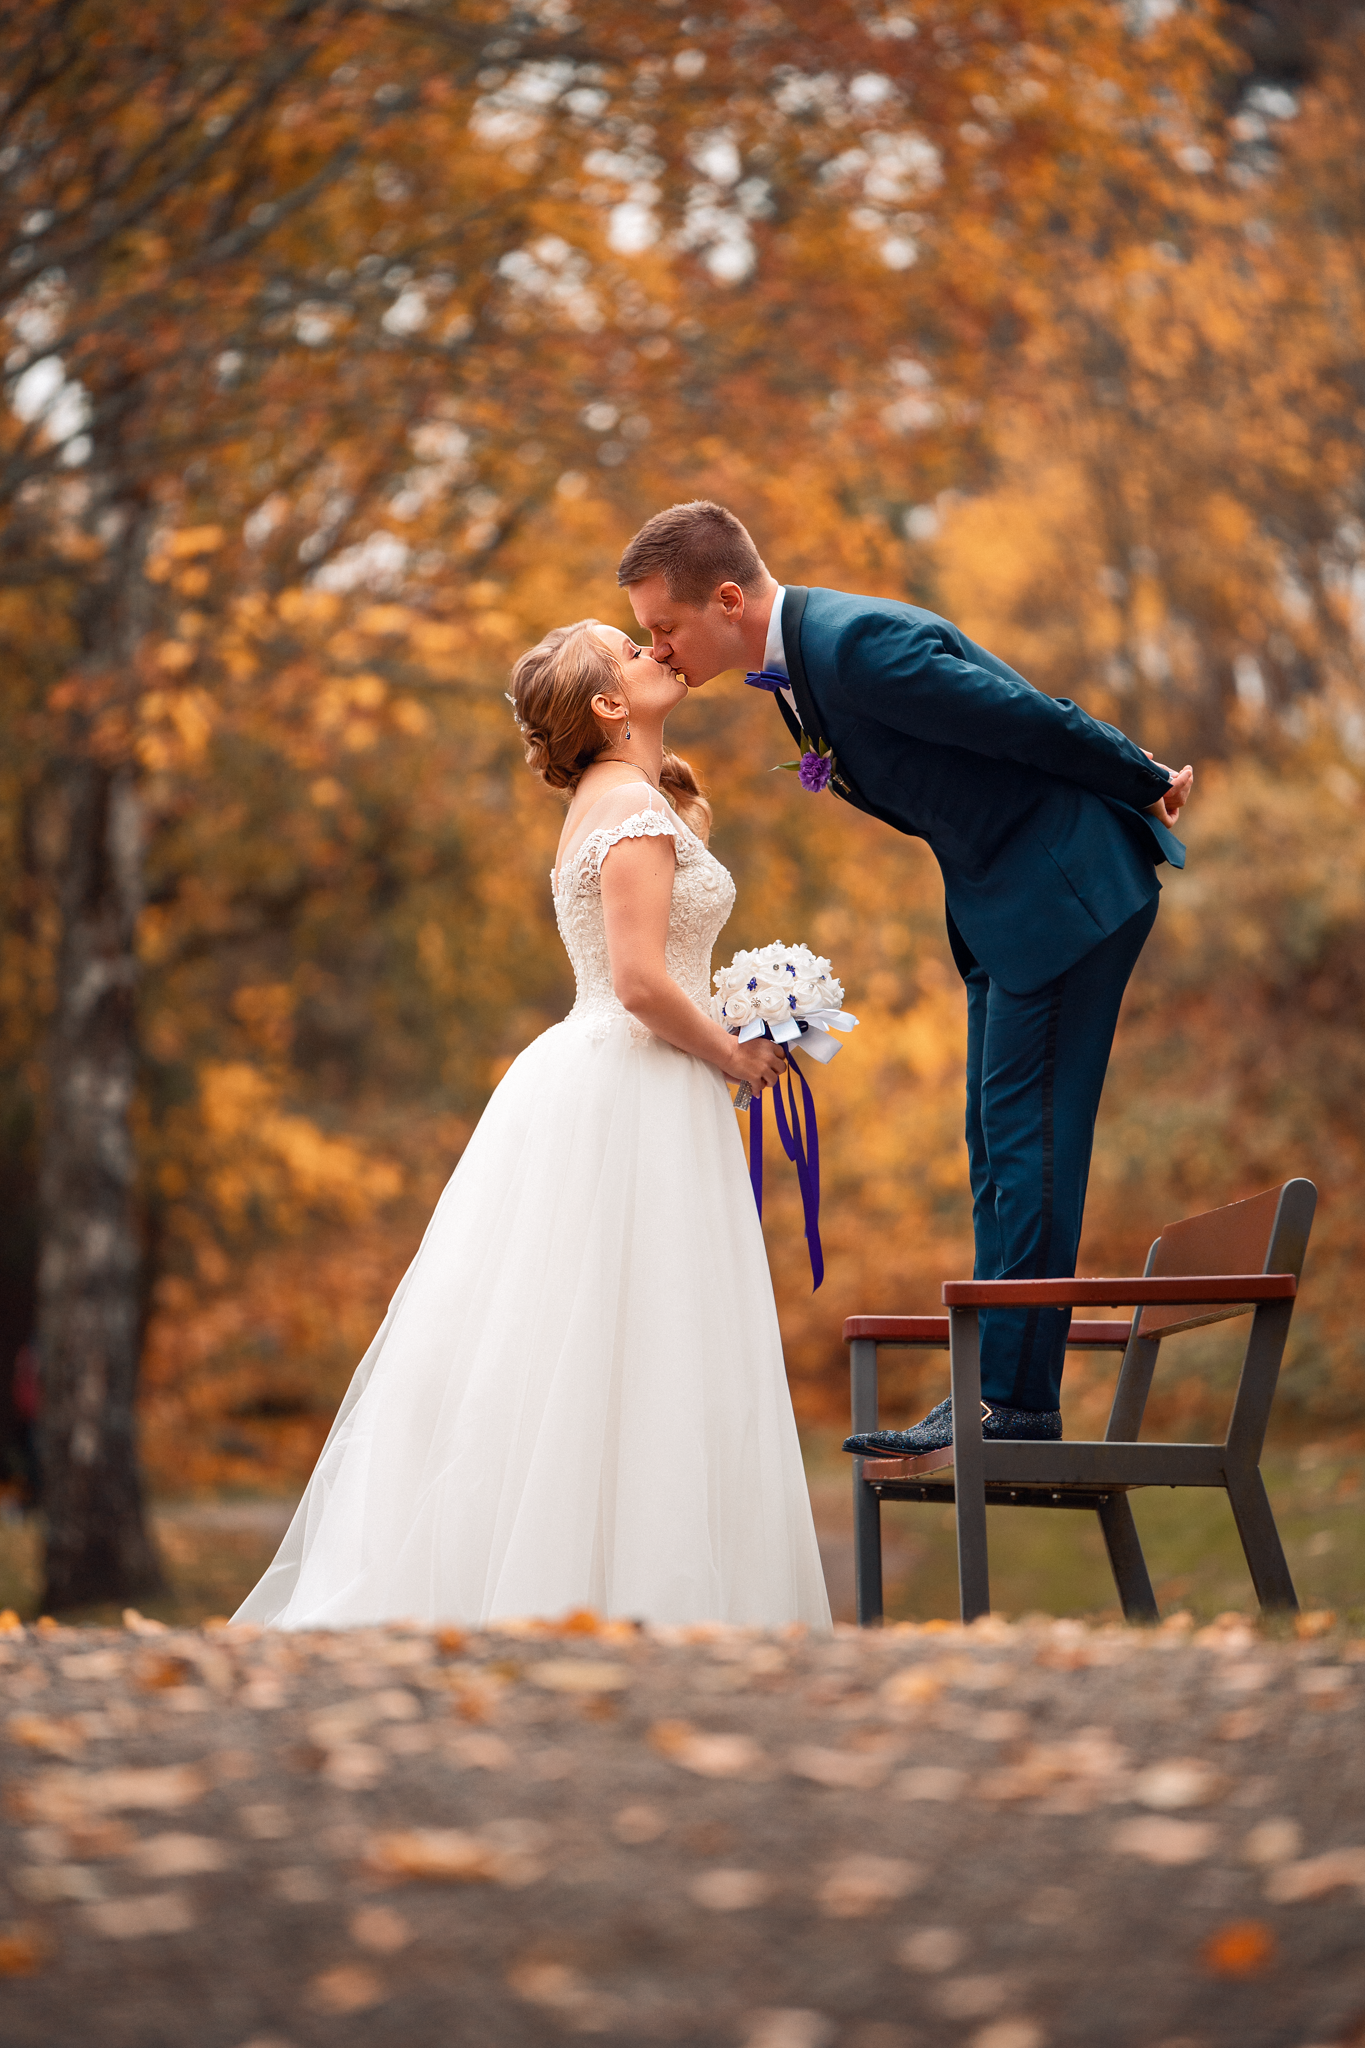 Hääkuvaus | Wedding photography | Sami Turunen